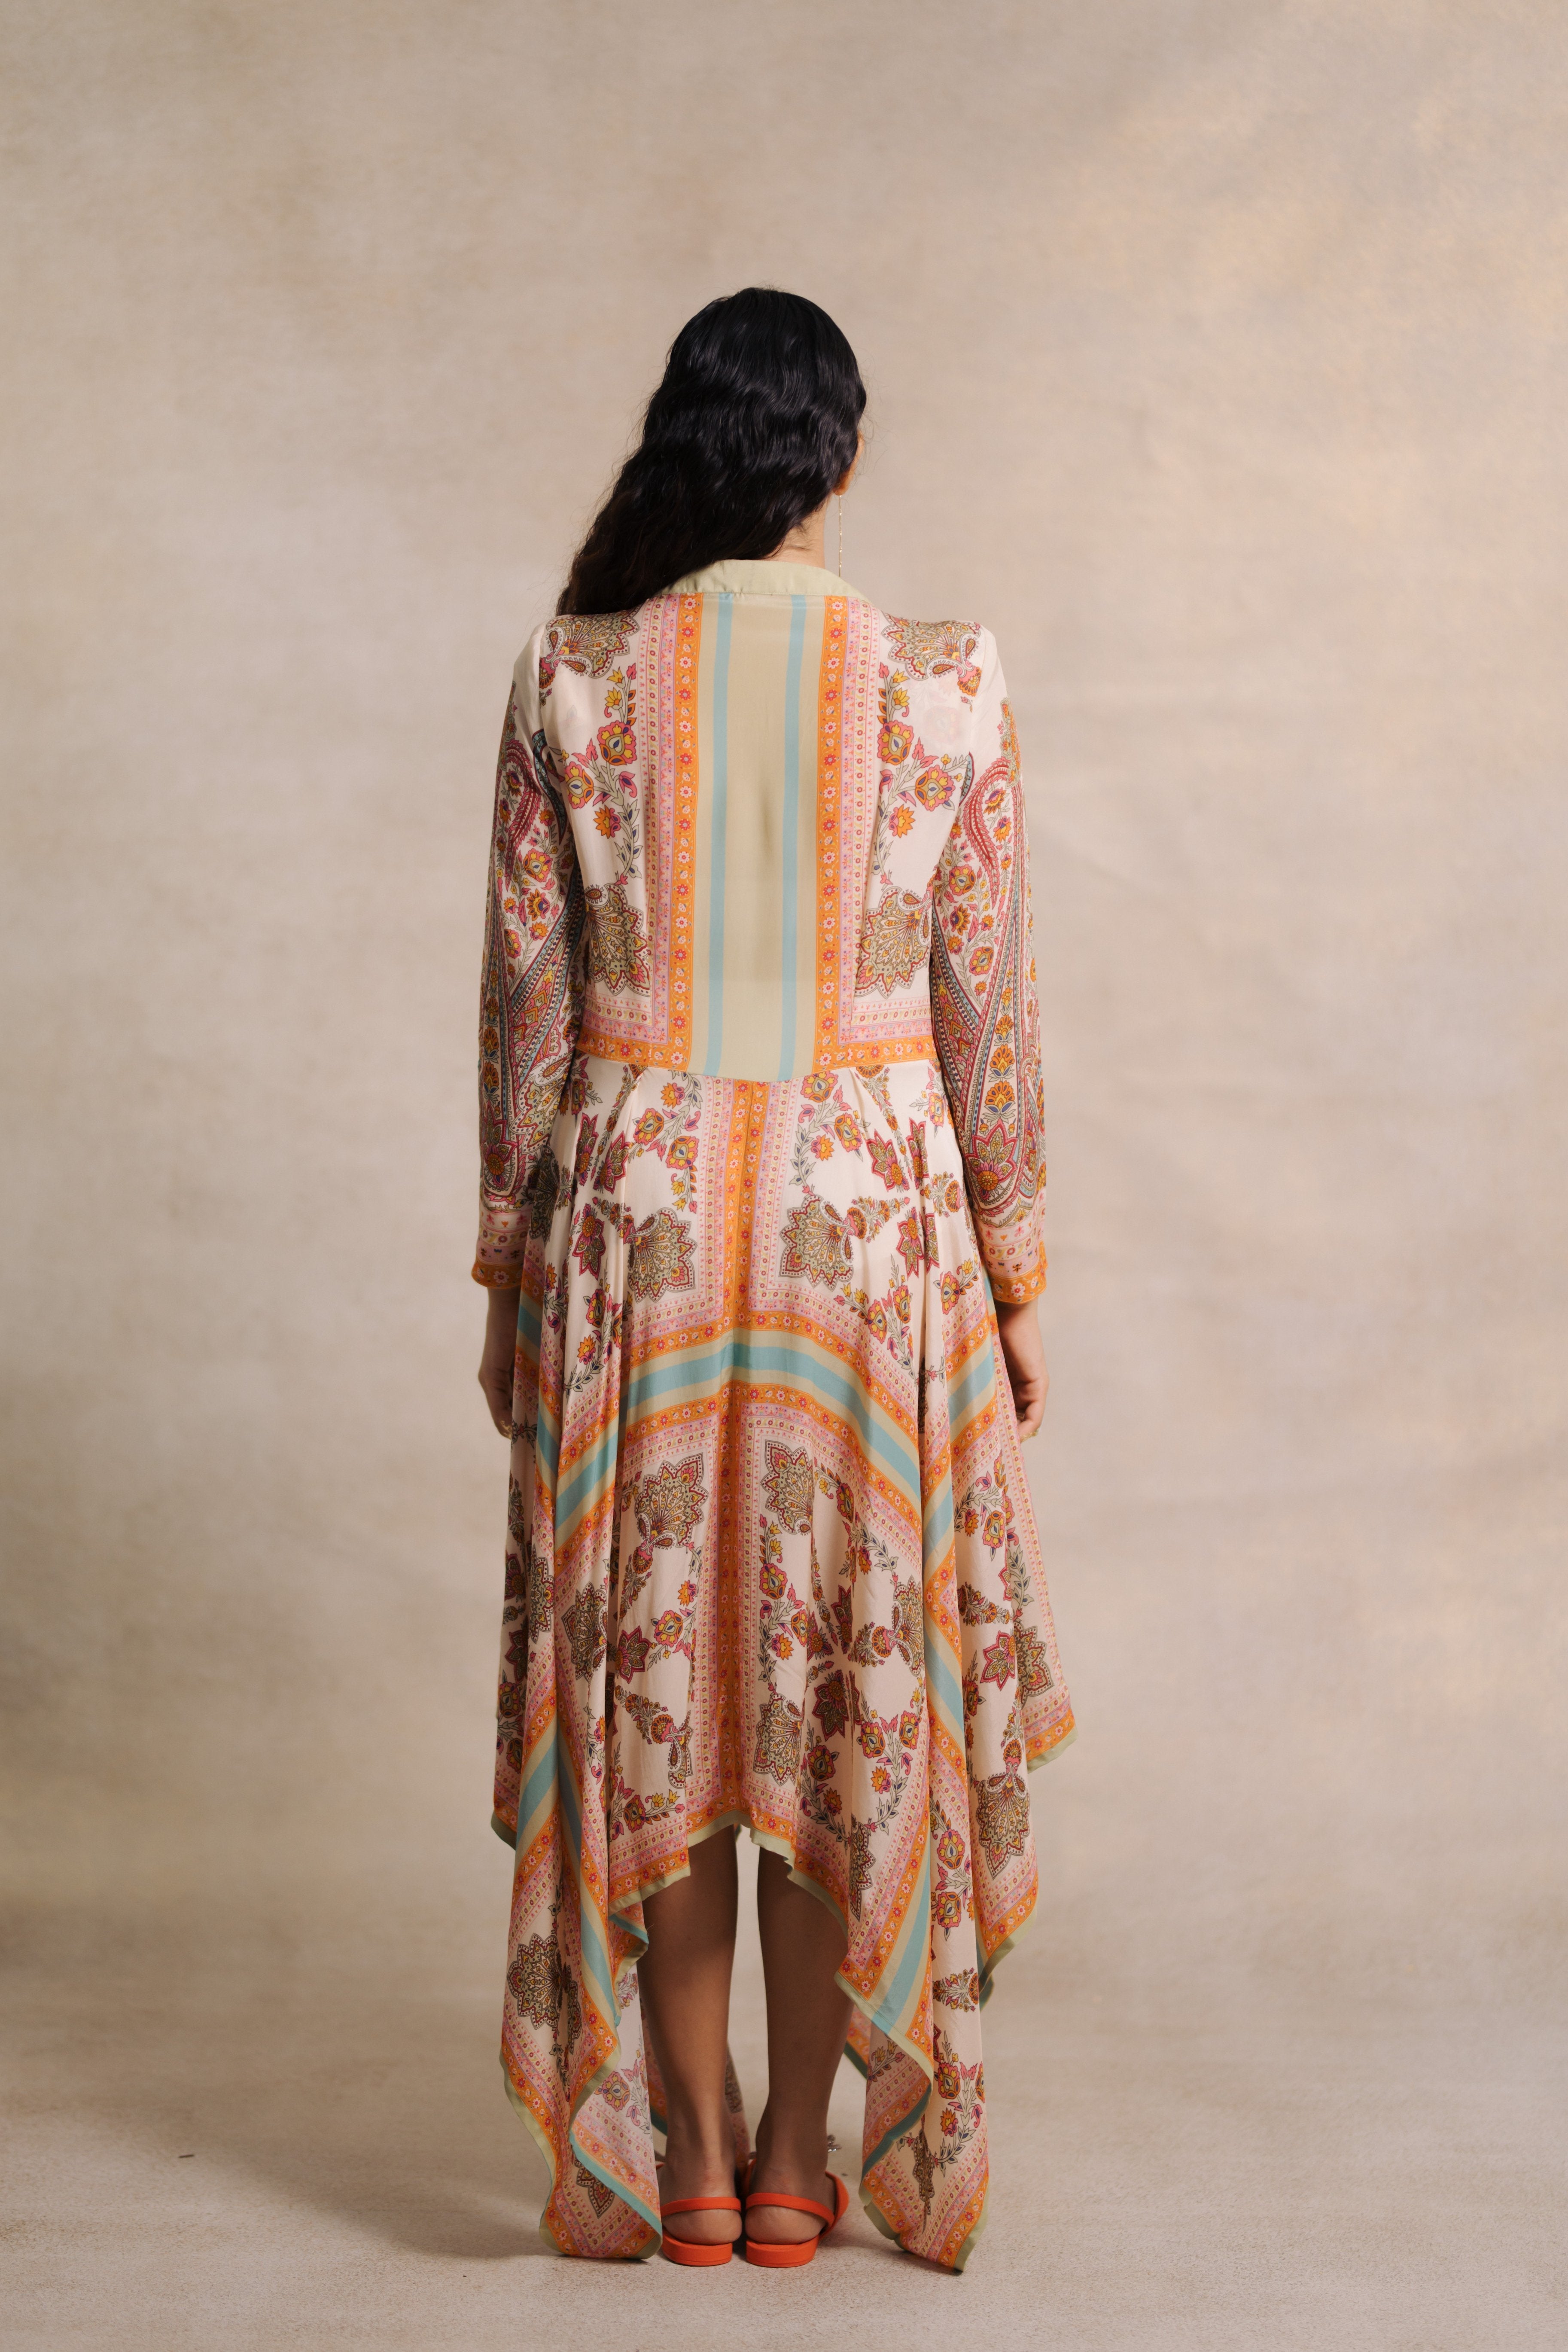 Sindh Dress